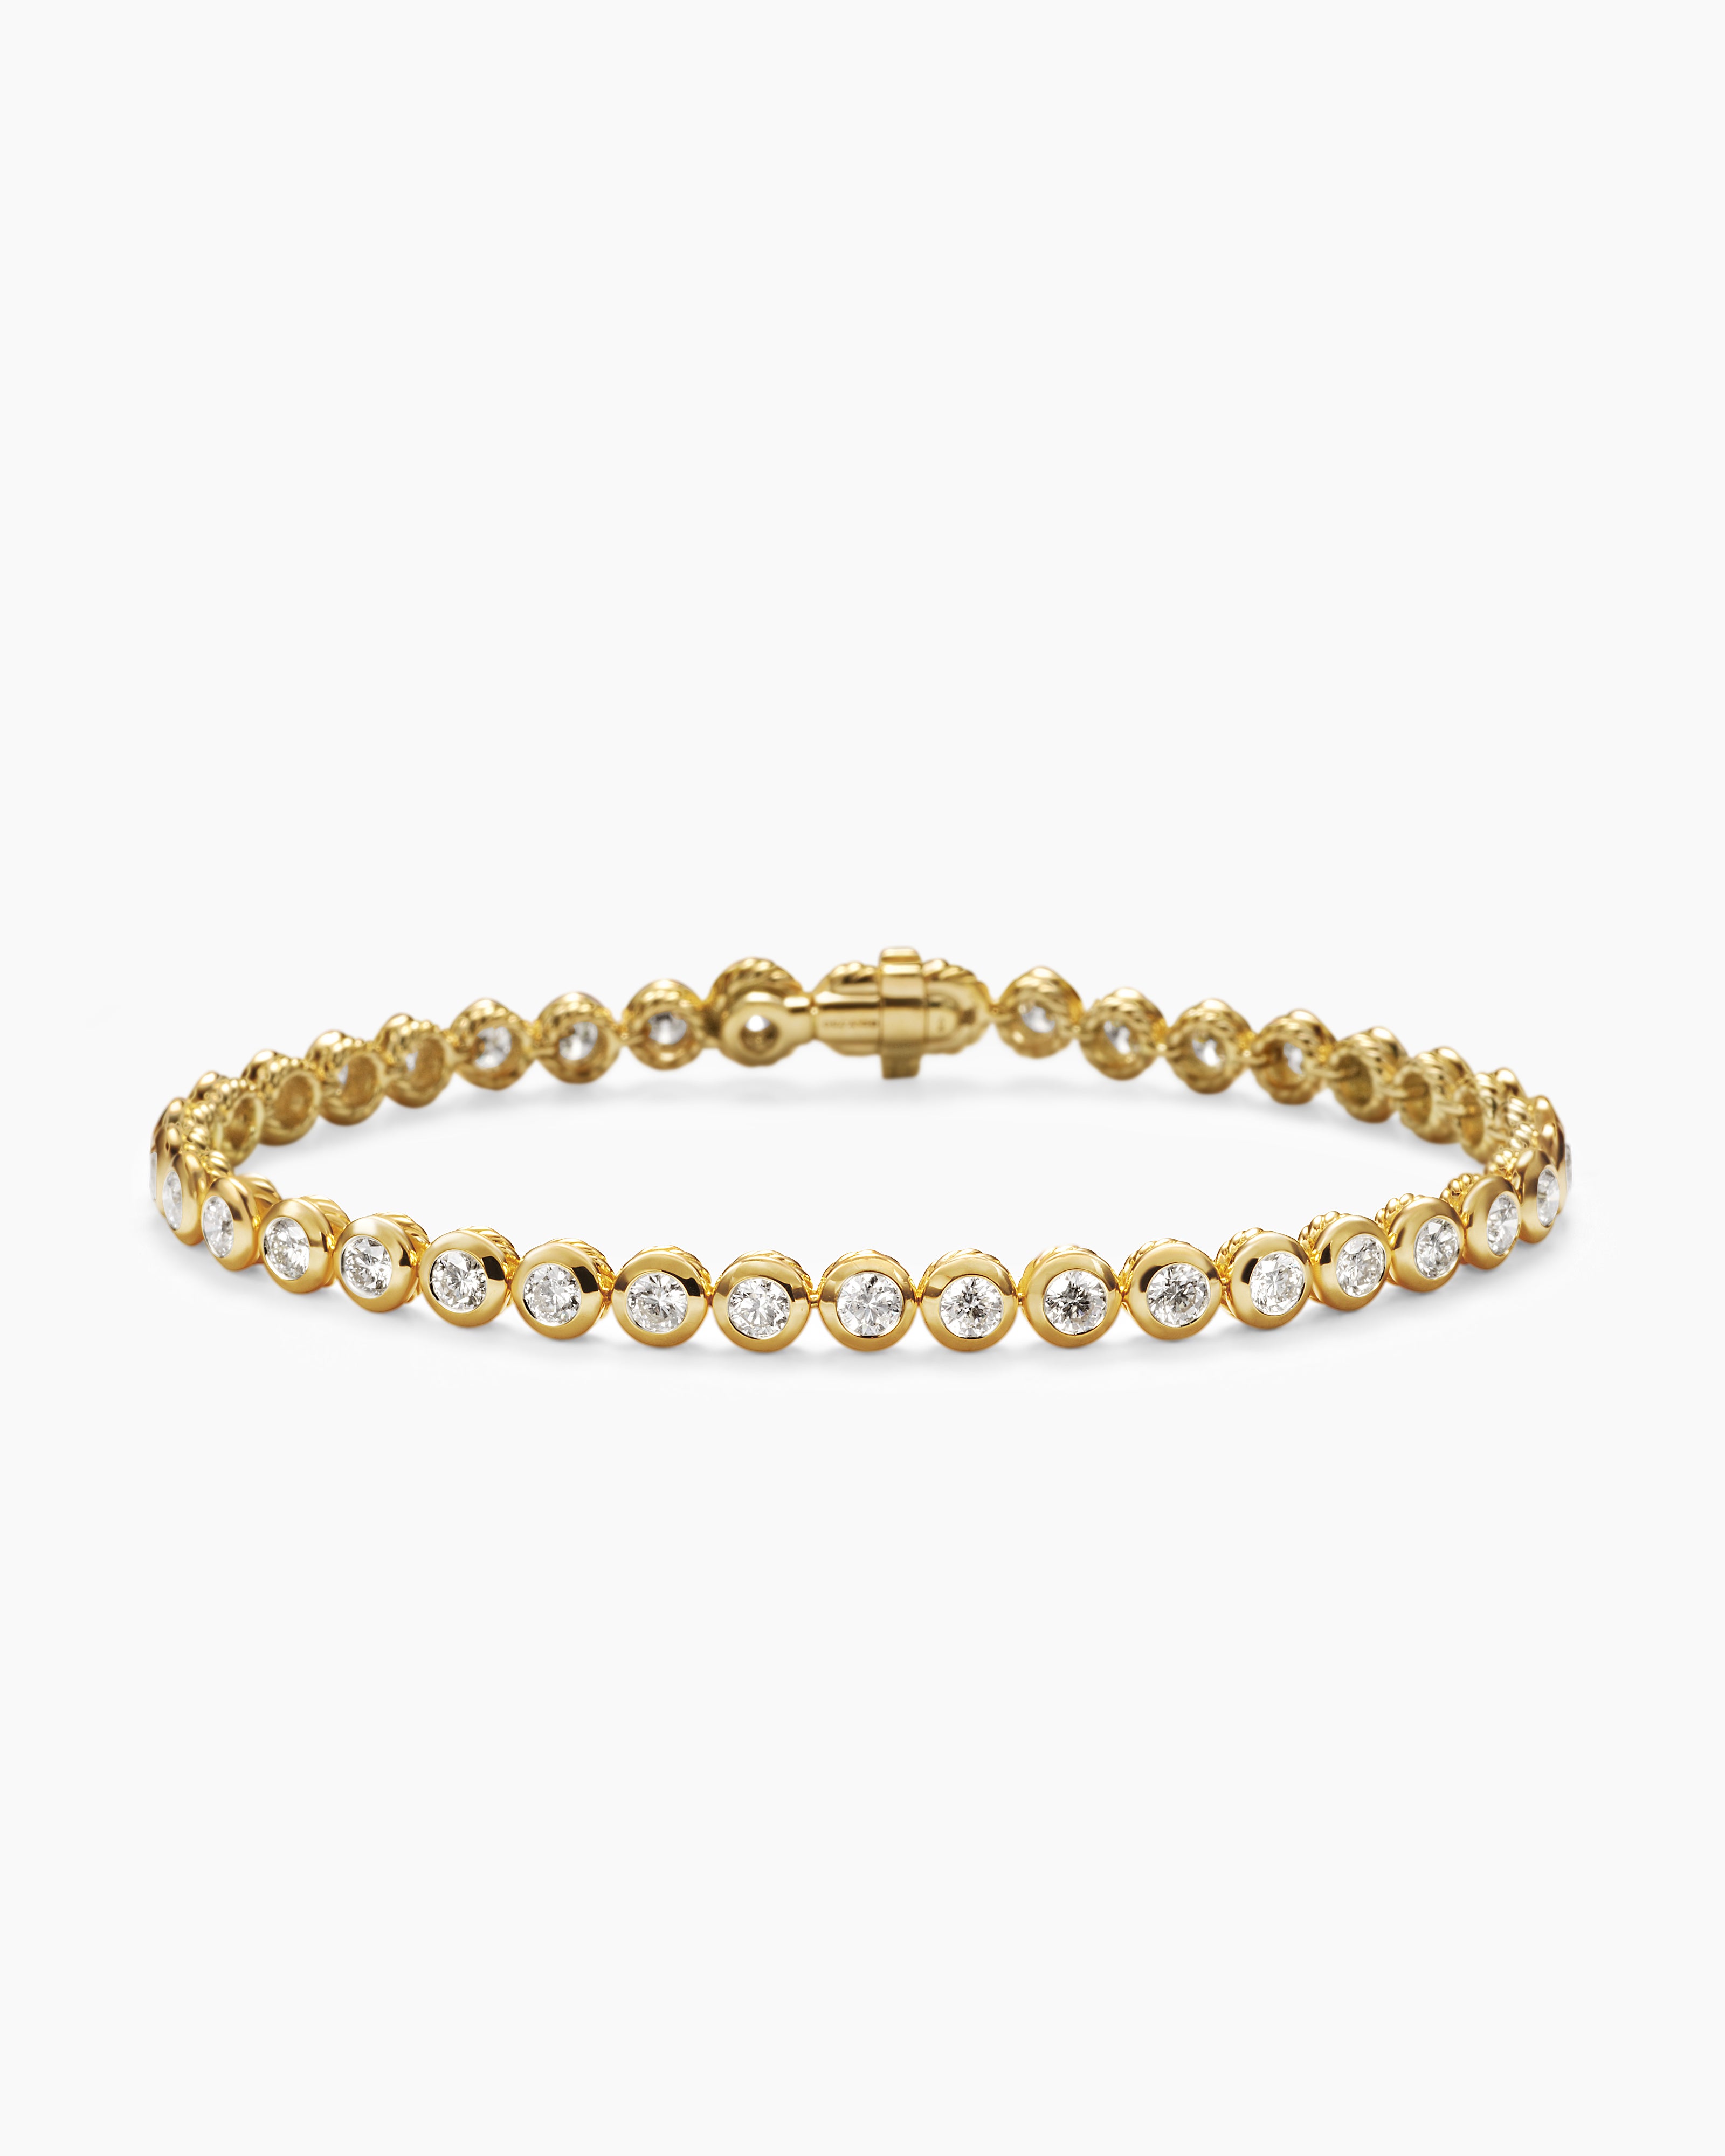 CRB6040300 - Diamants Légers bracelet, SM - Rose gold, diamond - Cartier